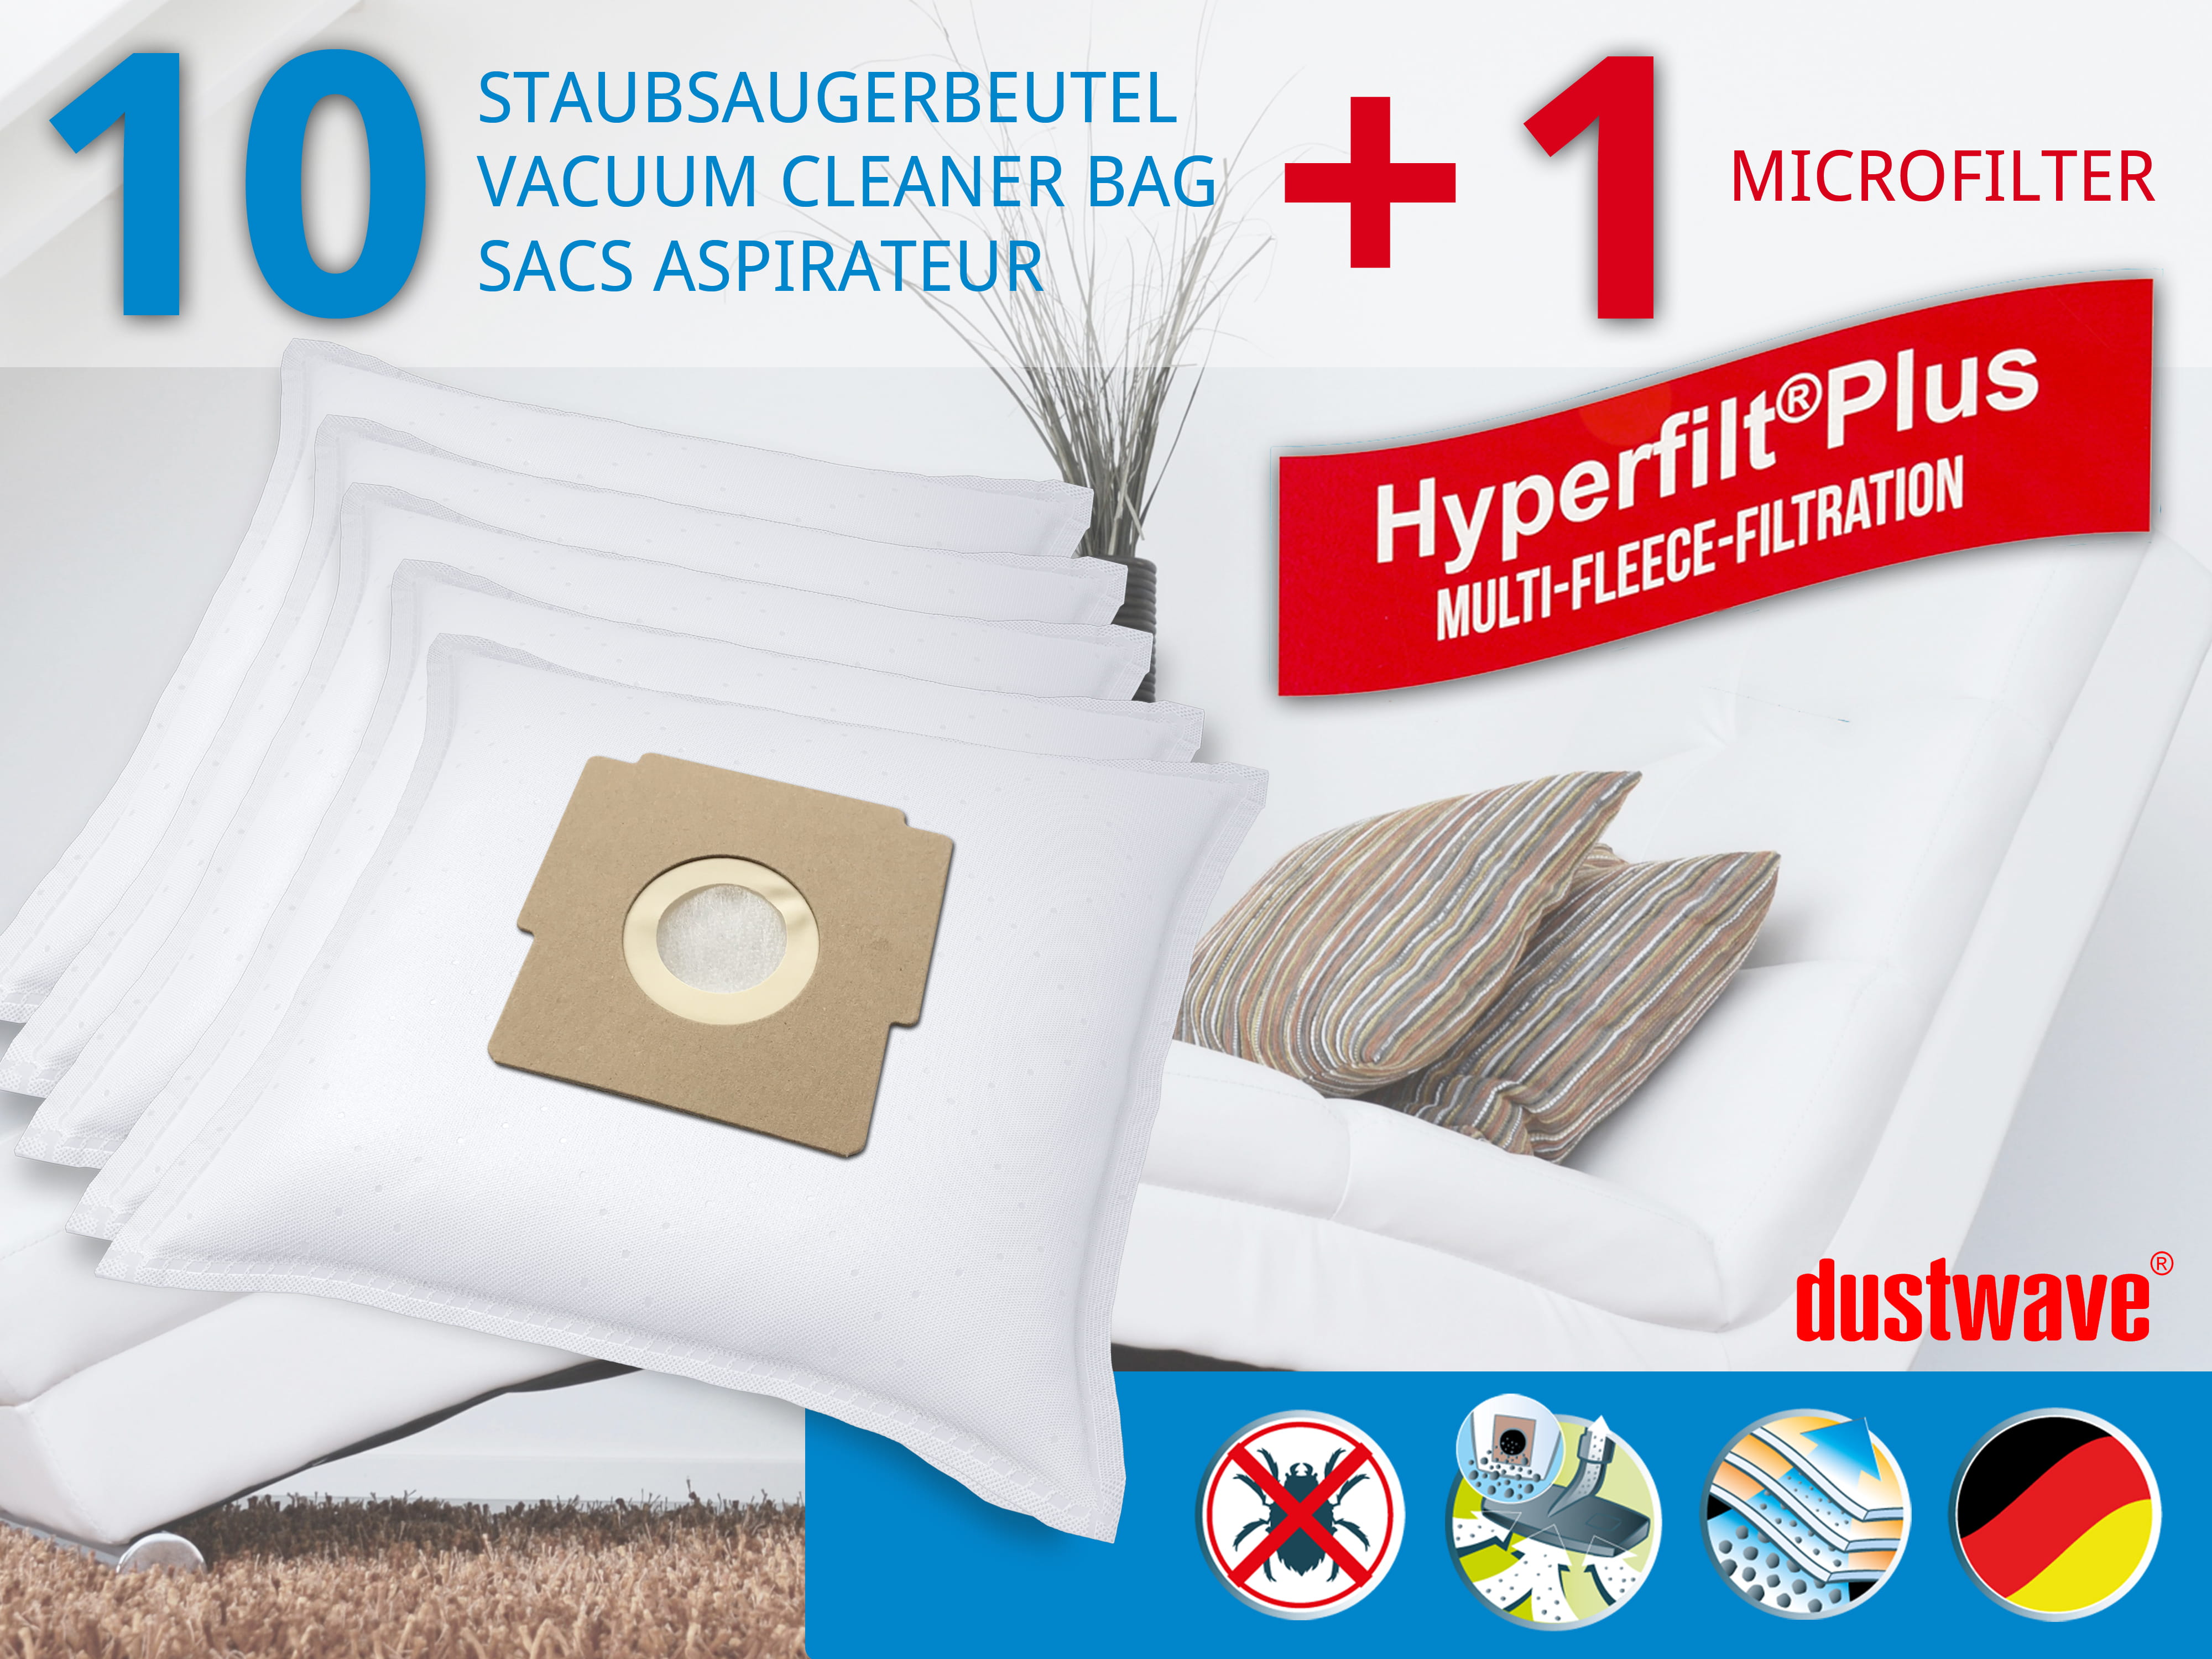 Dustwave® 10 Staubsaugerbeutel für Blue Sky AP 1400, 1500 - hocheffizient, mehrlagiges Mikrovlies mit Hygieneverschluss - Made in Germany